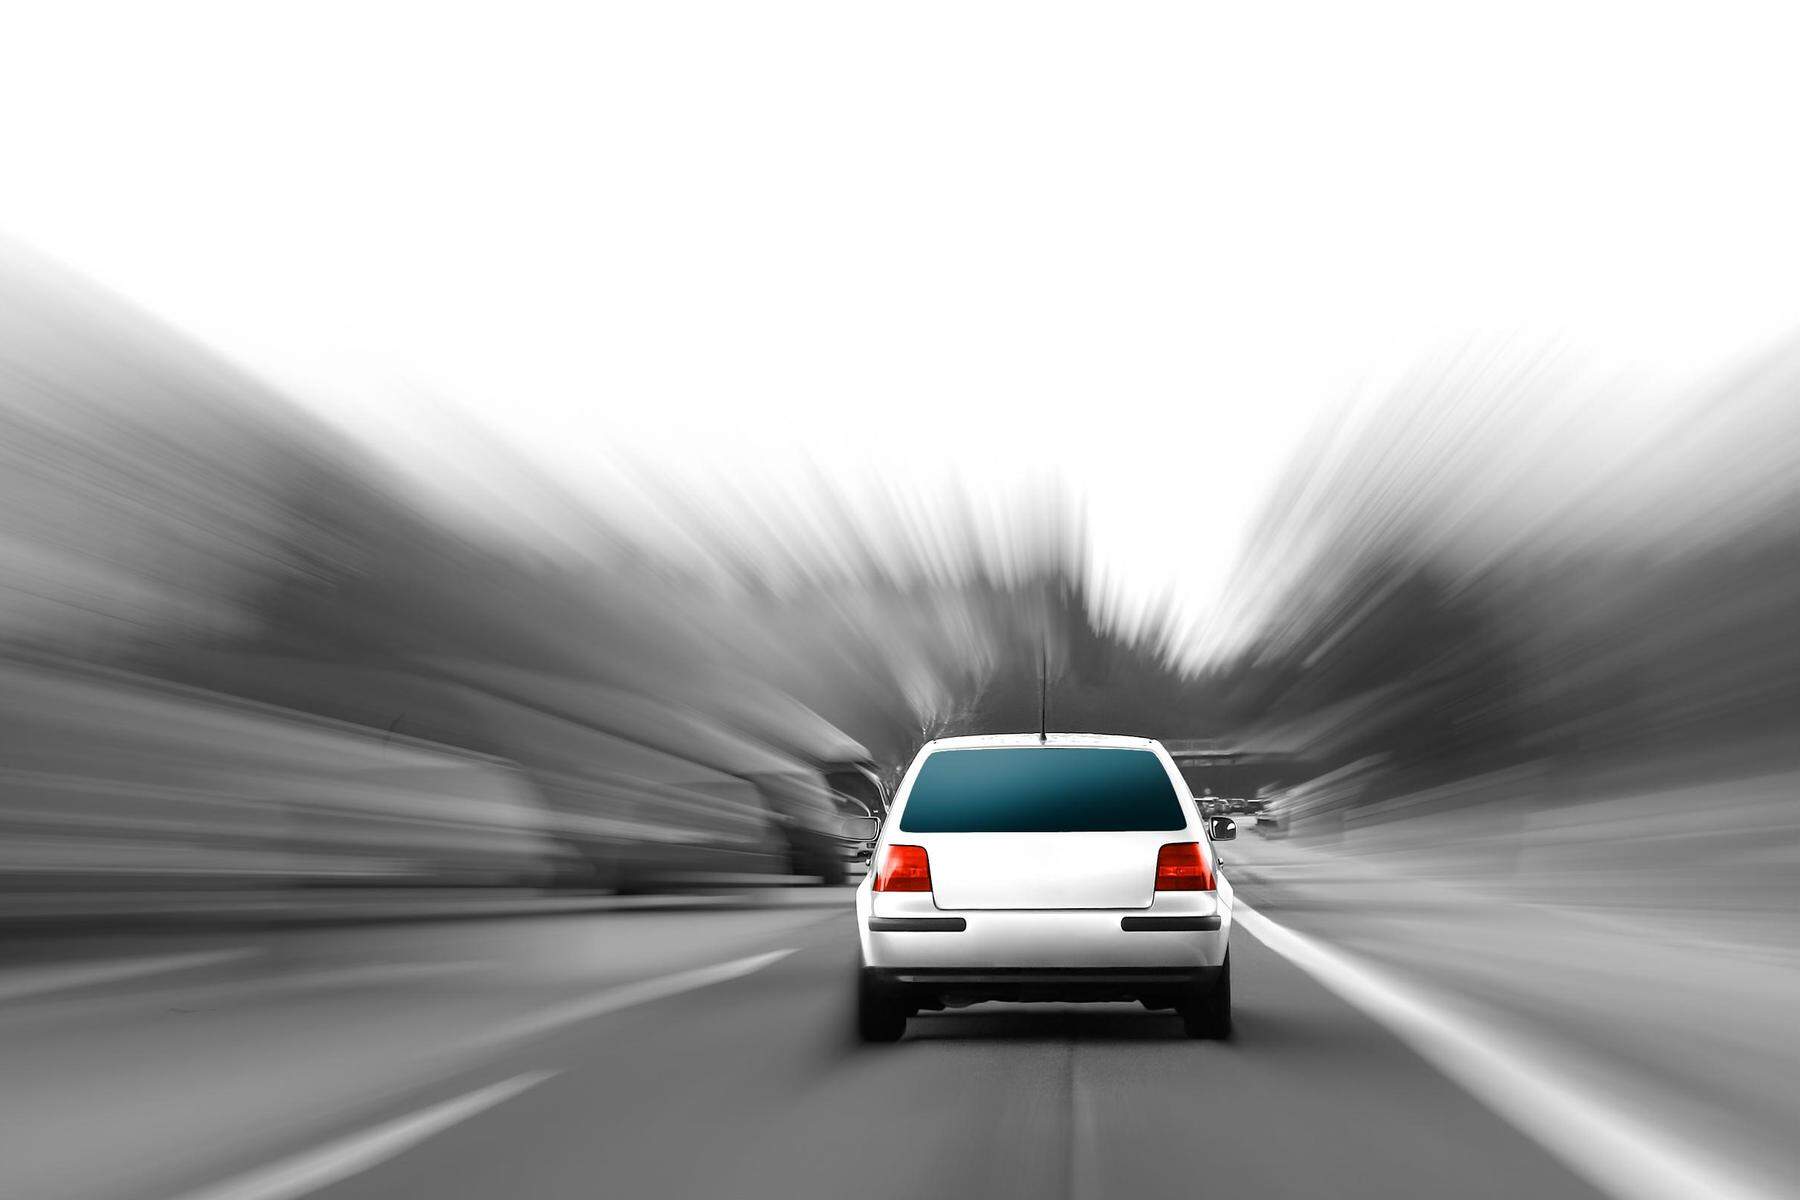 Führerschein abgenommen | 50-jähriger Kärntner raste mit 126 km/h durch 70er-Zone